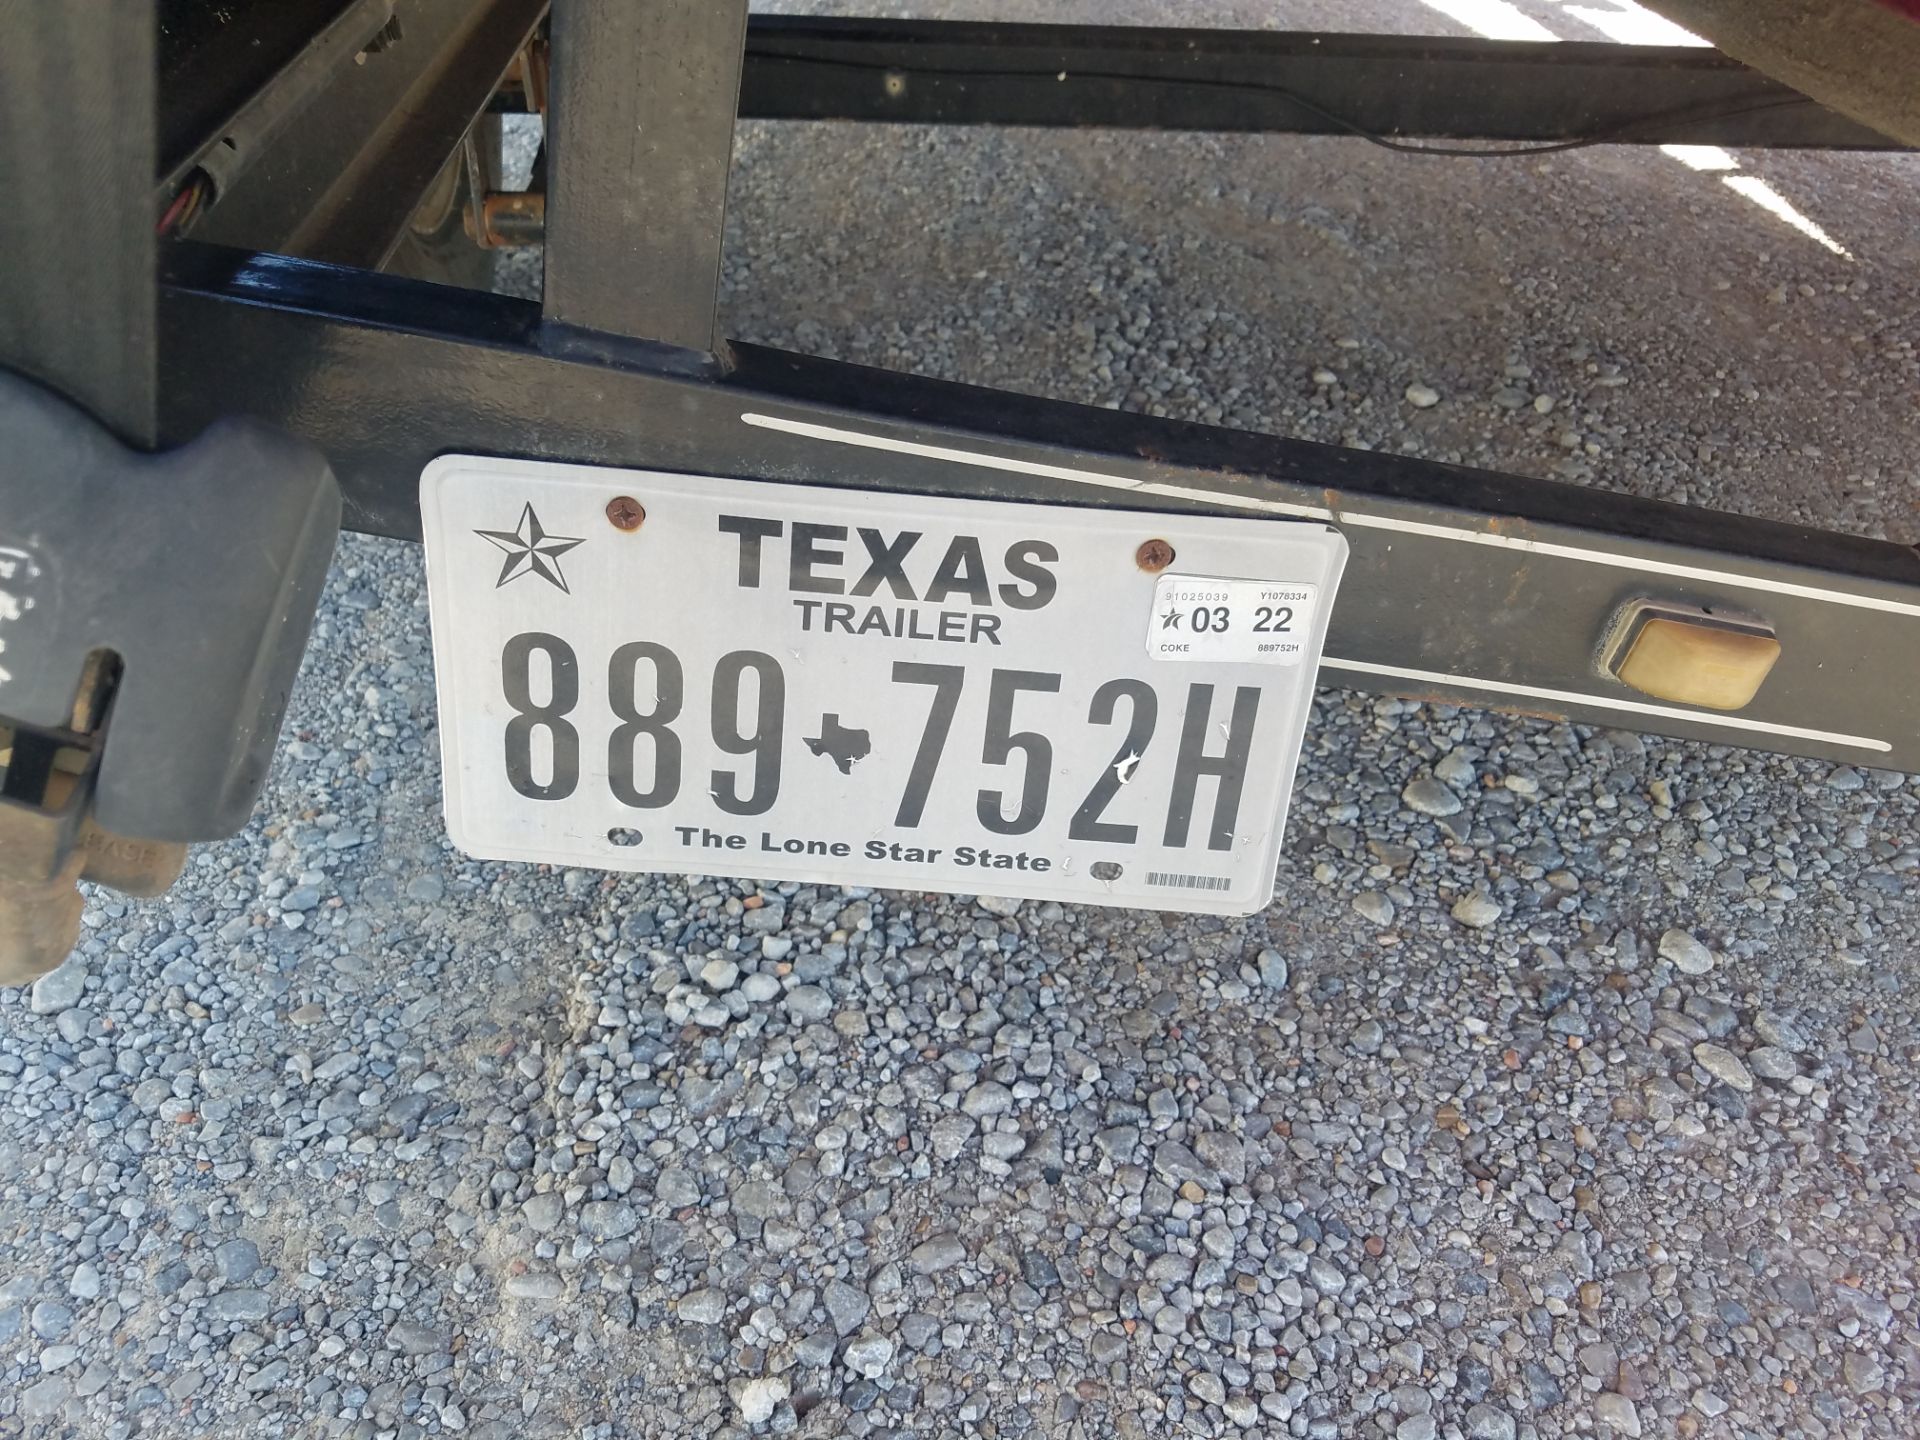 2000 Ranger 518DVX Comanche in Eastland, Texas - Photo 13